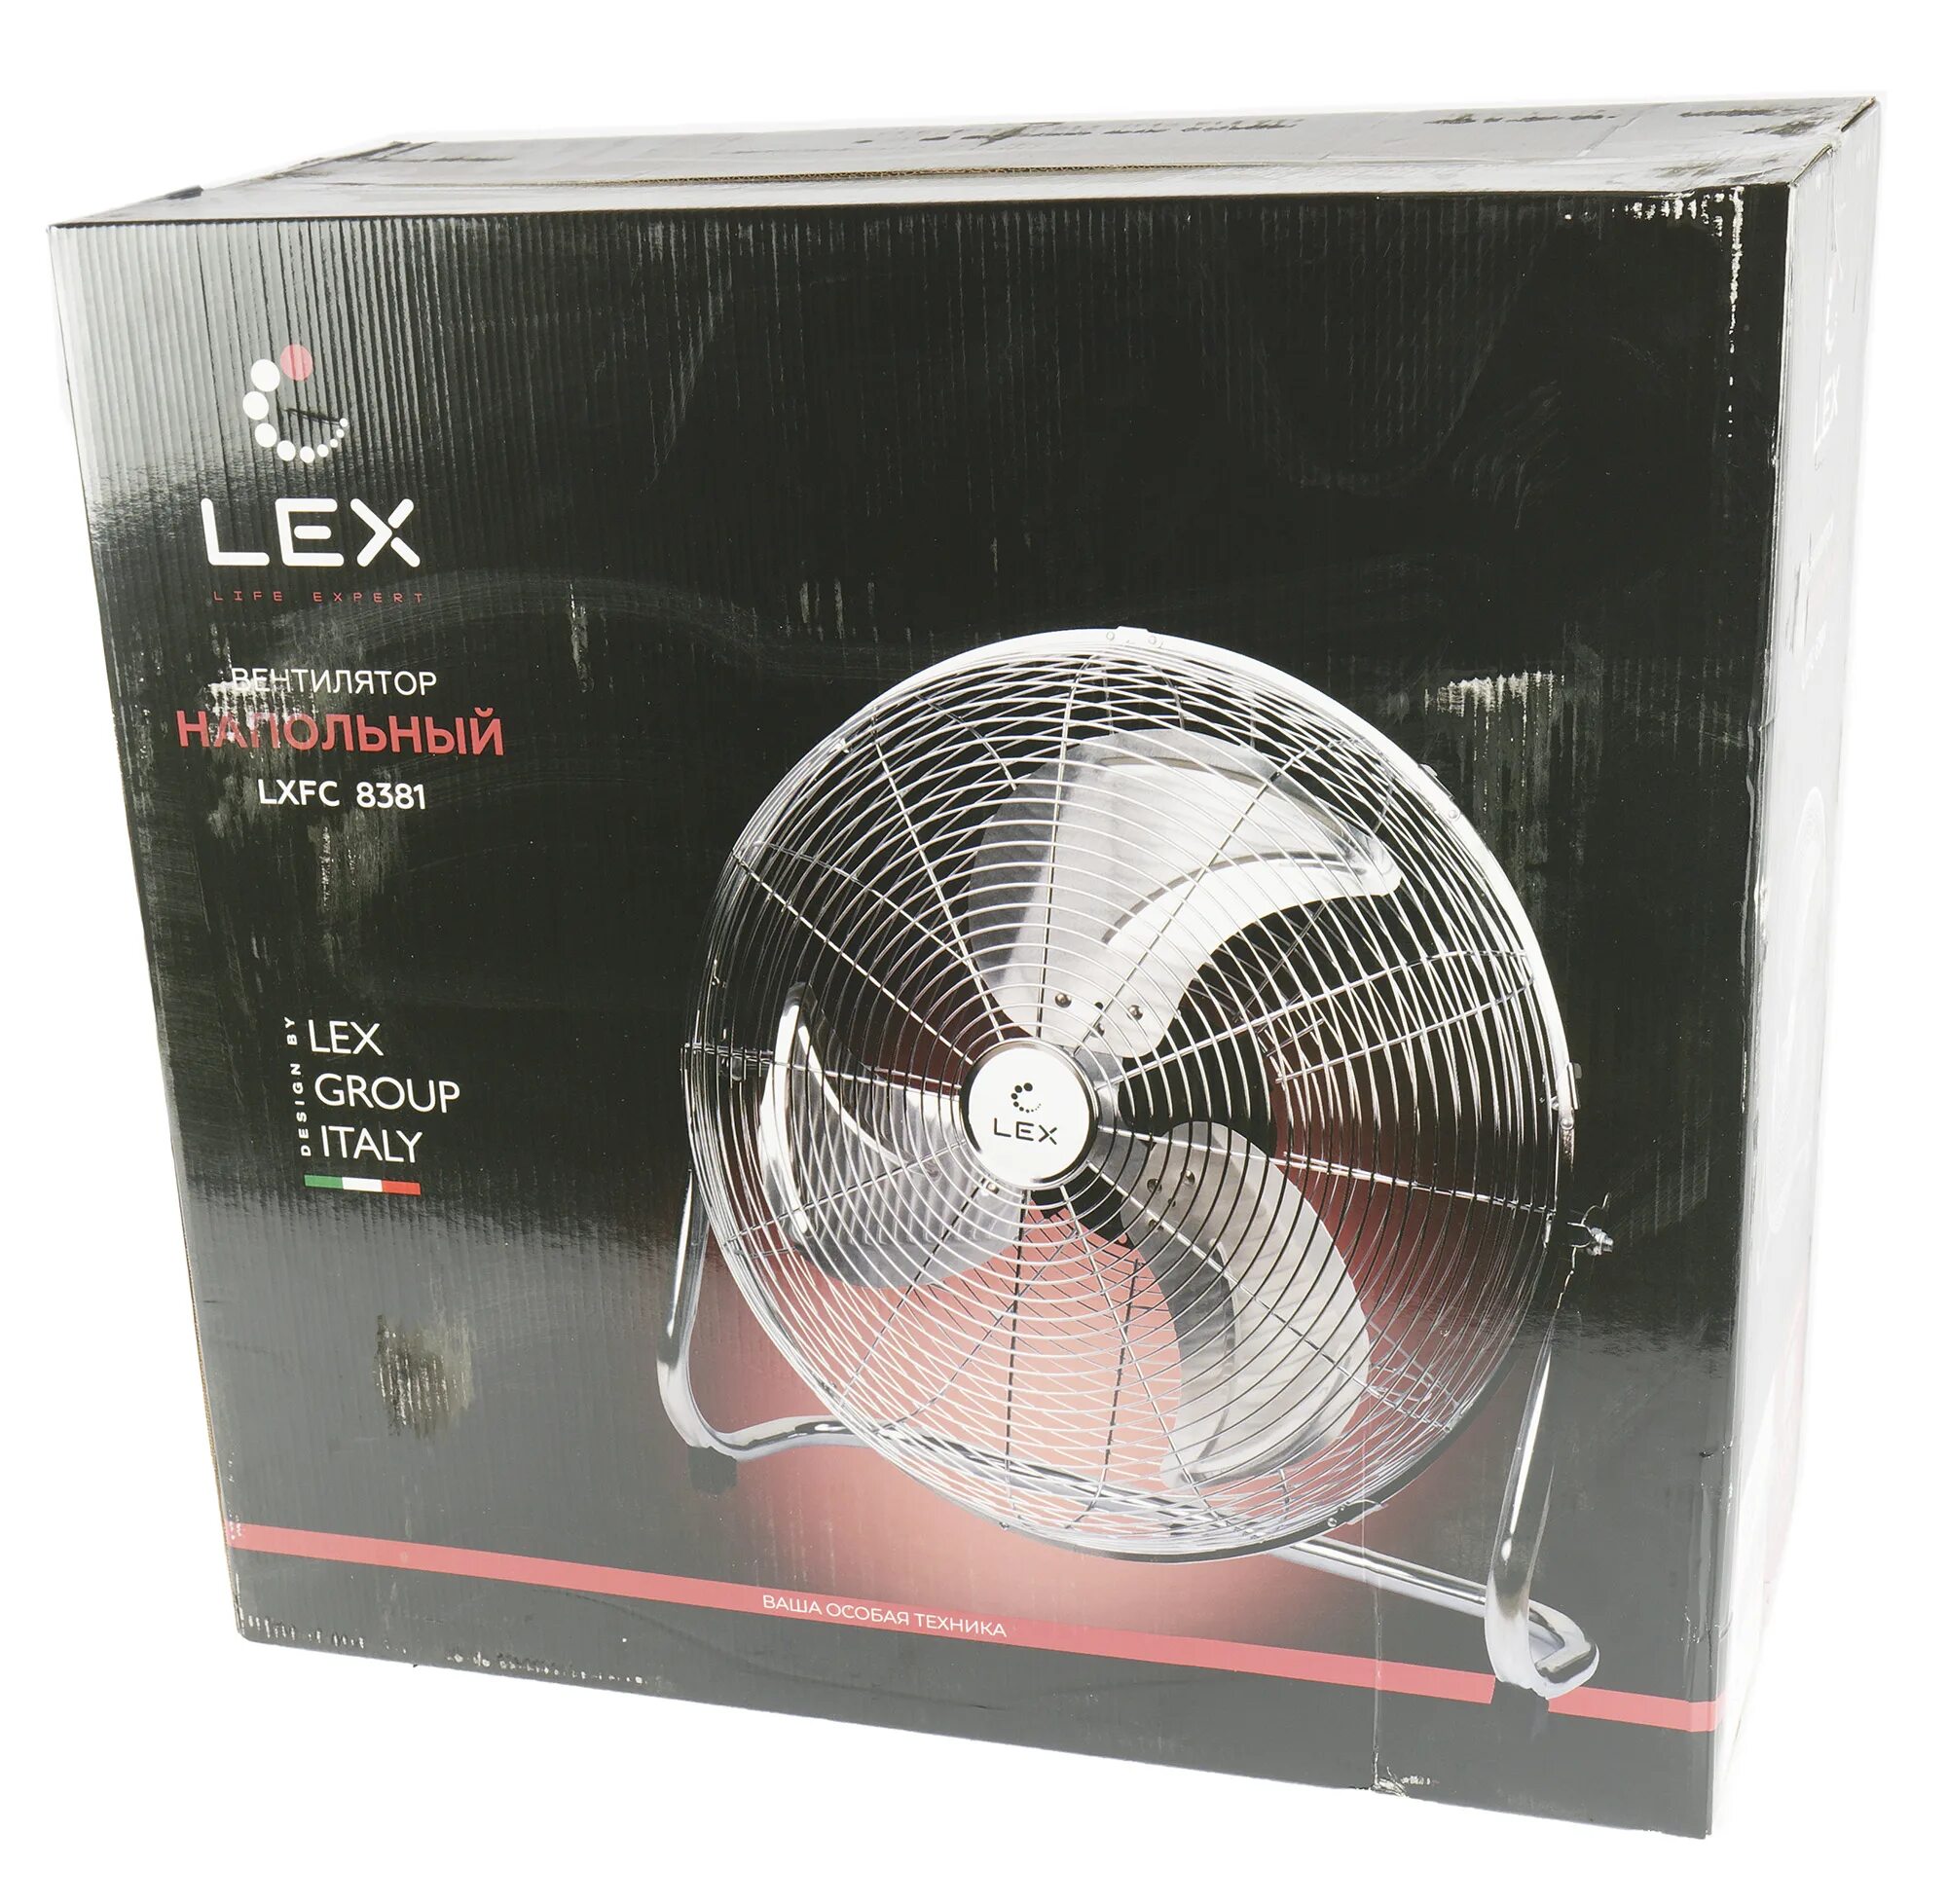 Вентилятор напольный Lex LX FC 8381. Напольный вентилятор Lex LXFC 8381 , 20", 150вт, стальной.. LXFC 8320 вентилятор. Вентилятор Lex LX FC 8344.